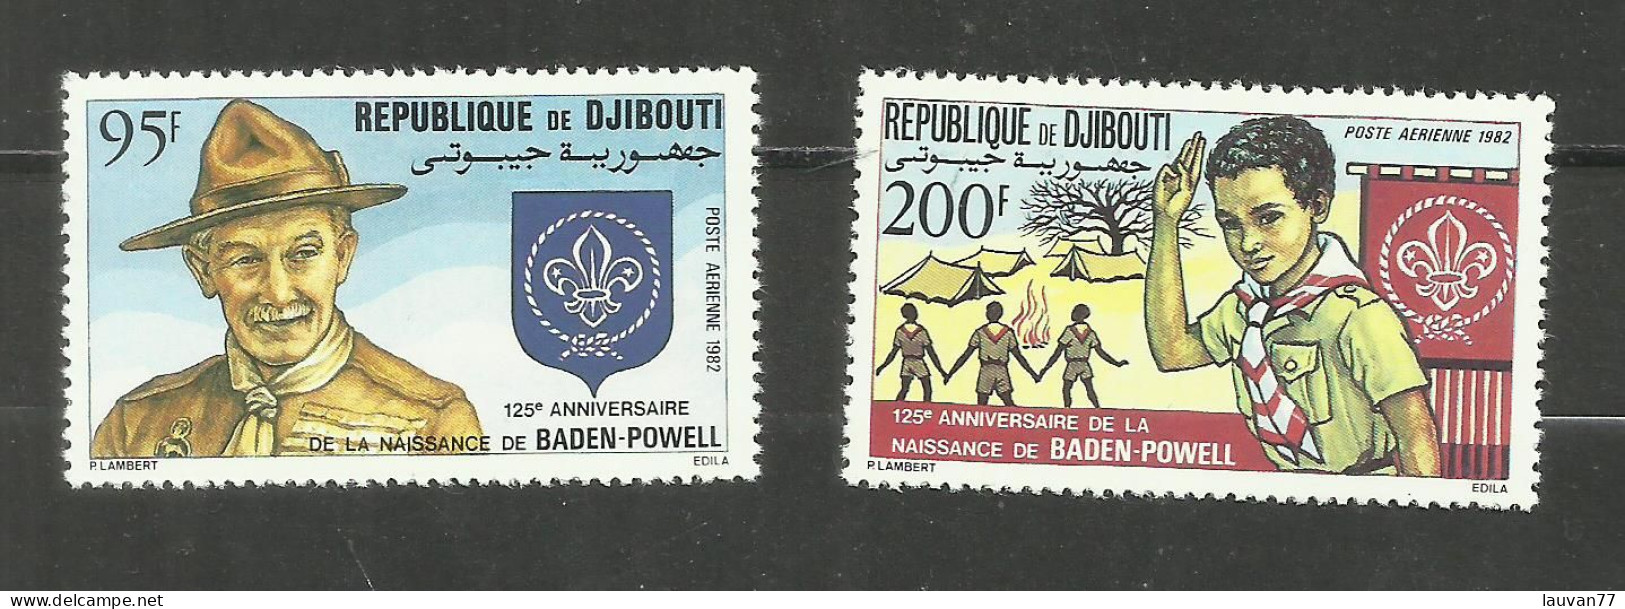 Djibouti POSTE AERIENNE N°169, 170 Neufs** Cote 5.70€ - Djibouti (1977-...)